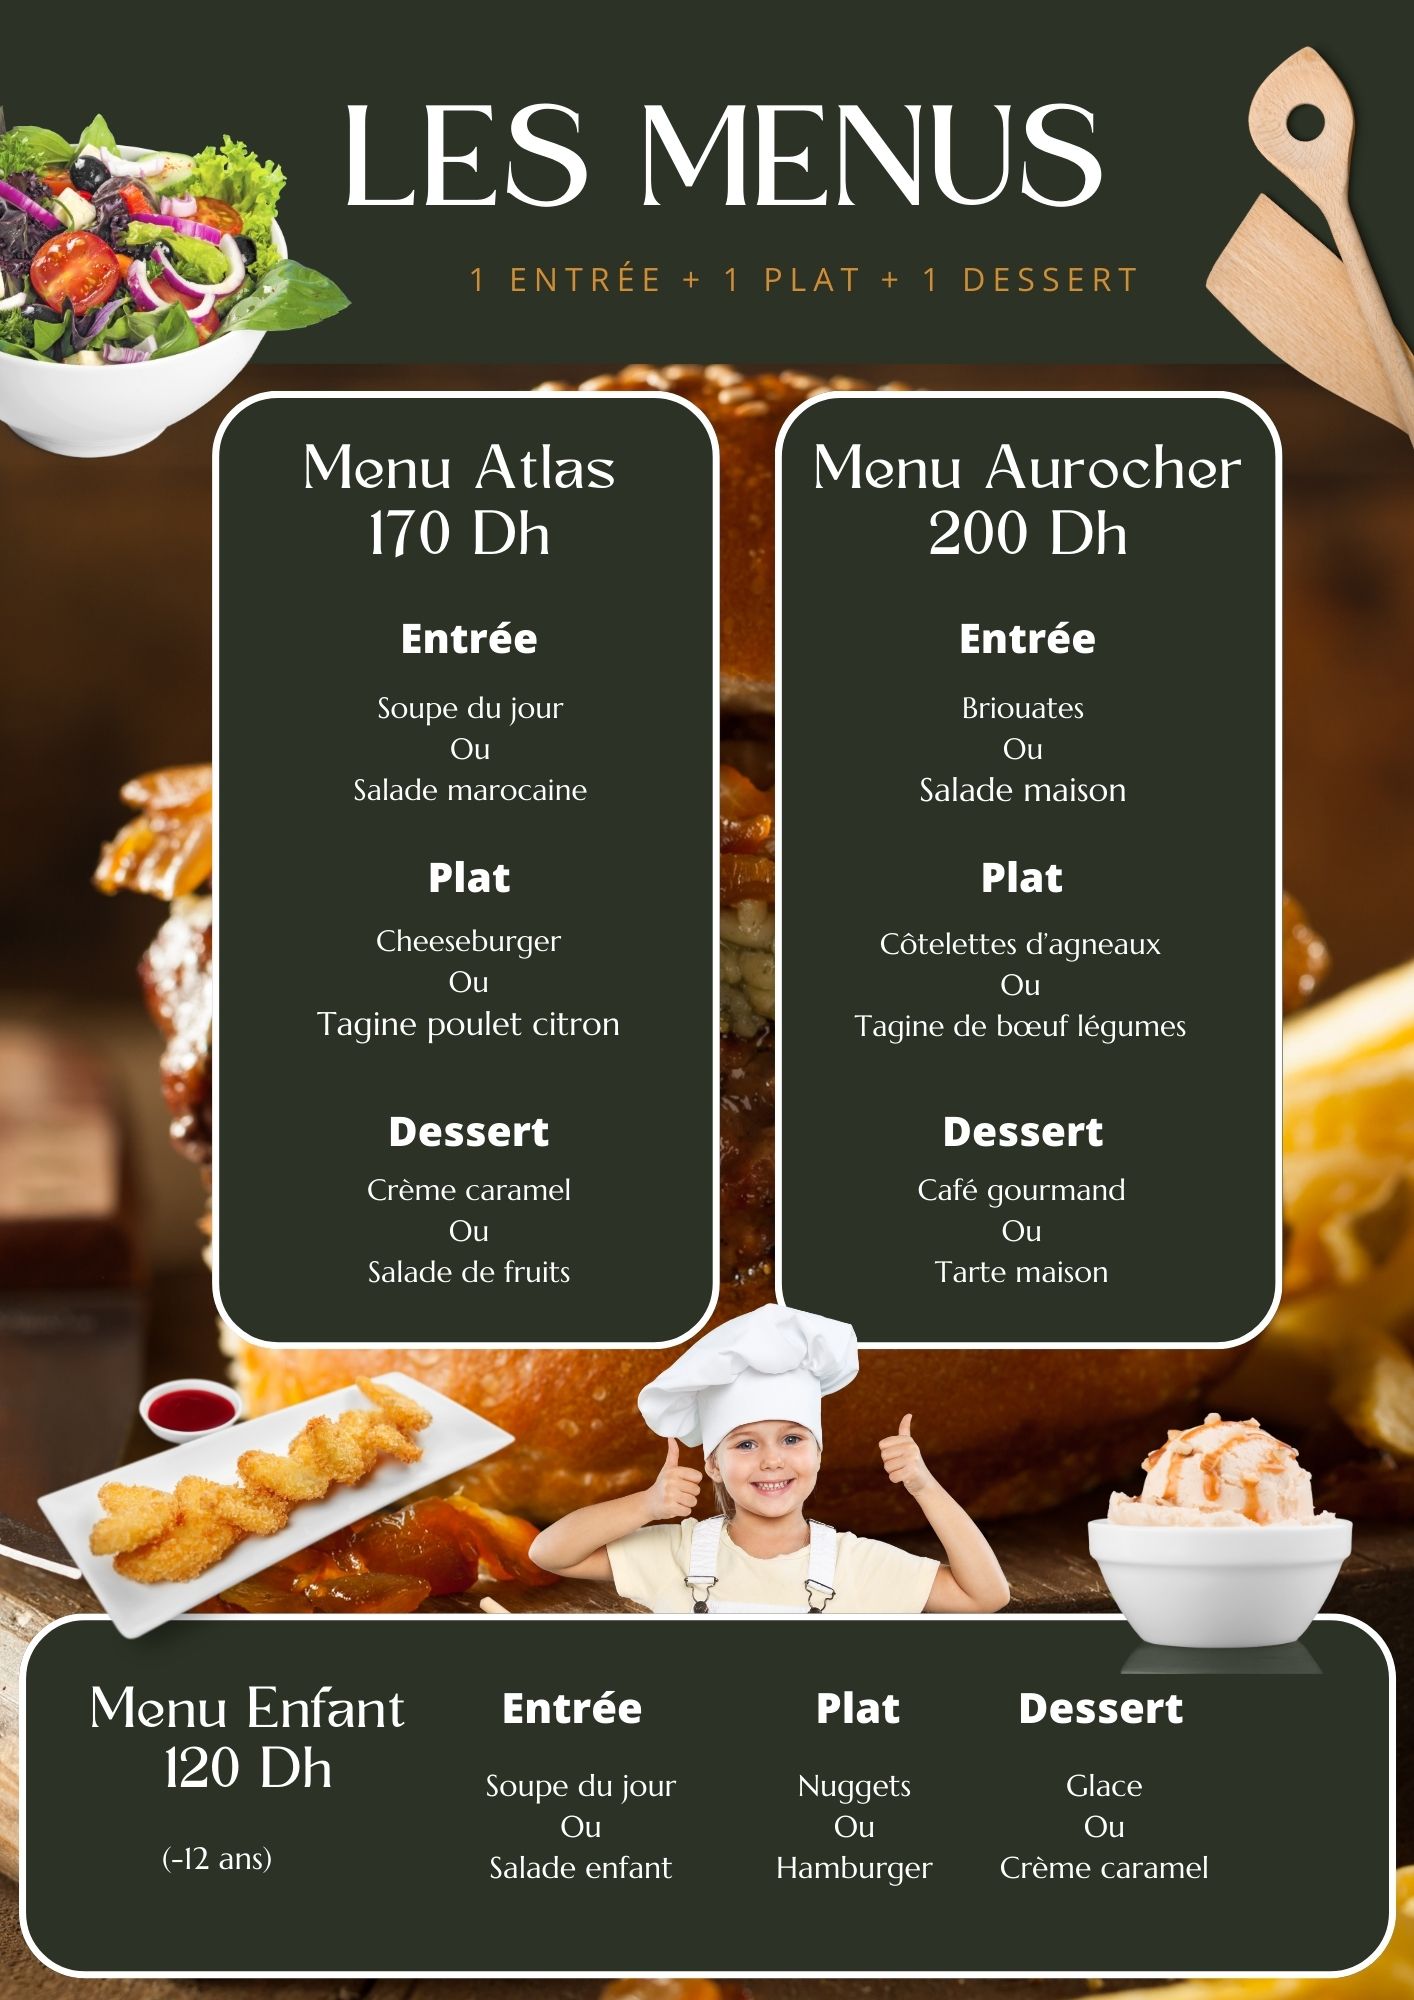 Carte du restaurant de l'Hôtel Aurocher montrant deux menus : Menu Atlas à 170dh et Menu Aurocher à 200dh.